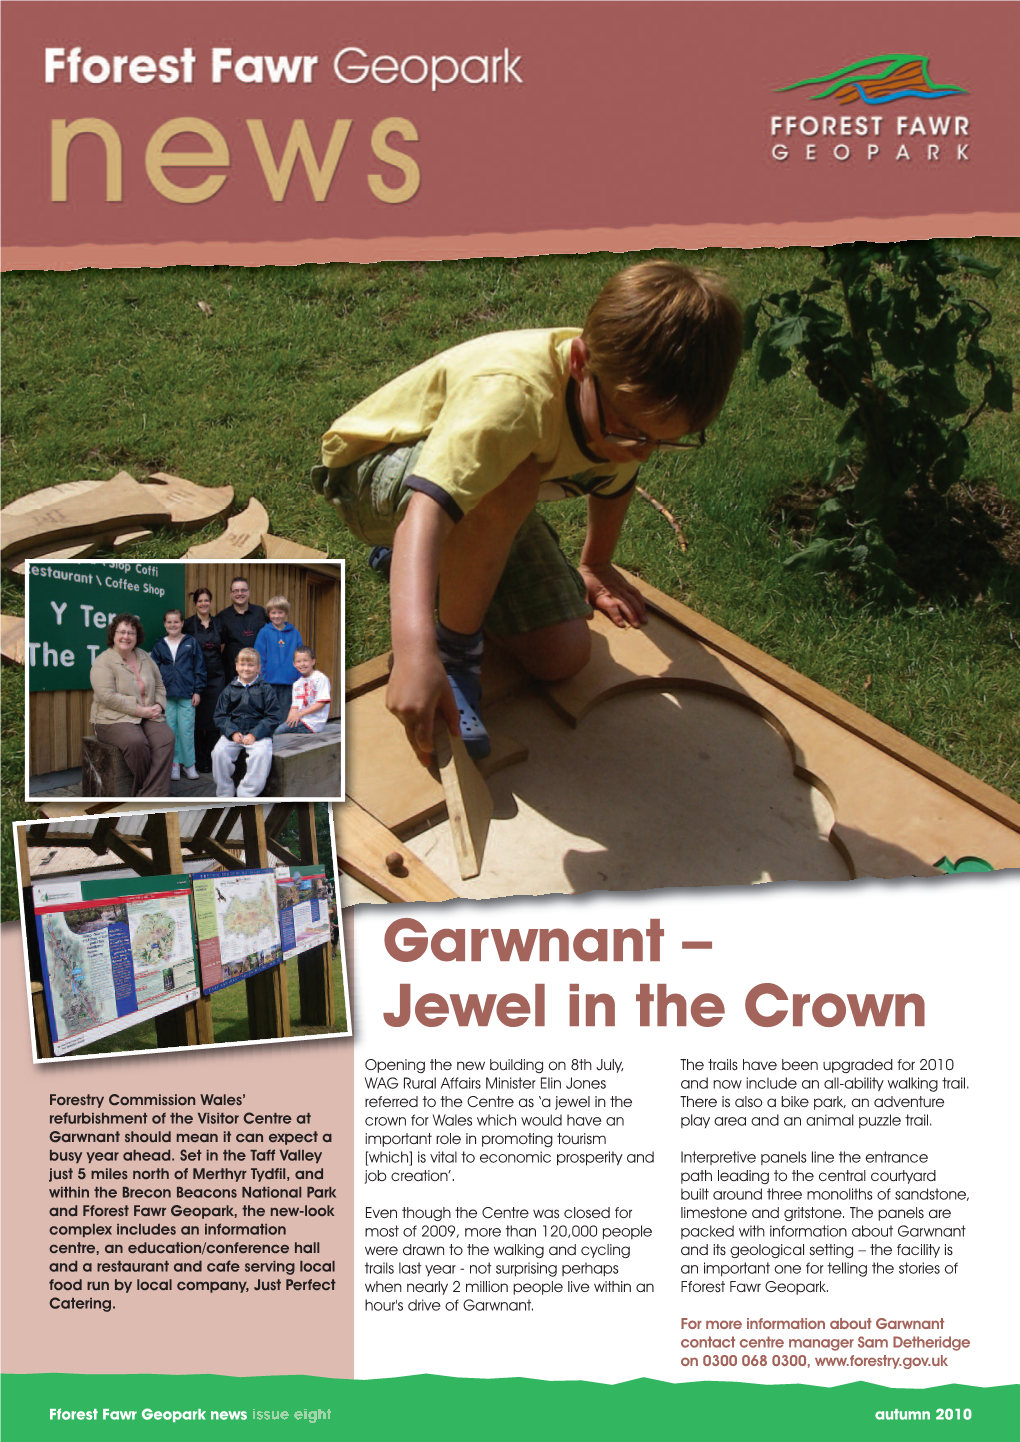 Garwnant – Jewel in the Crown